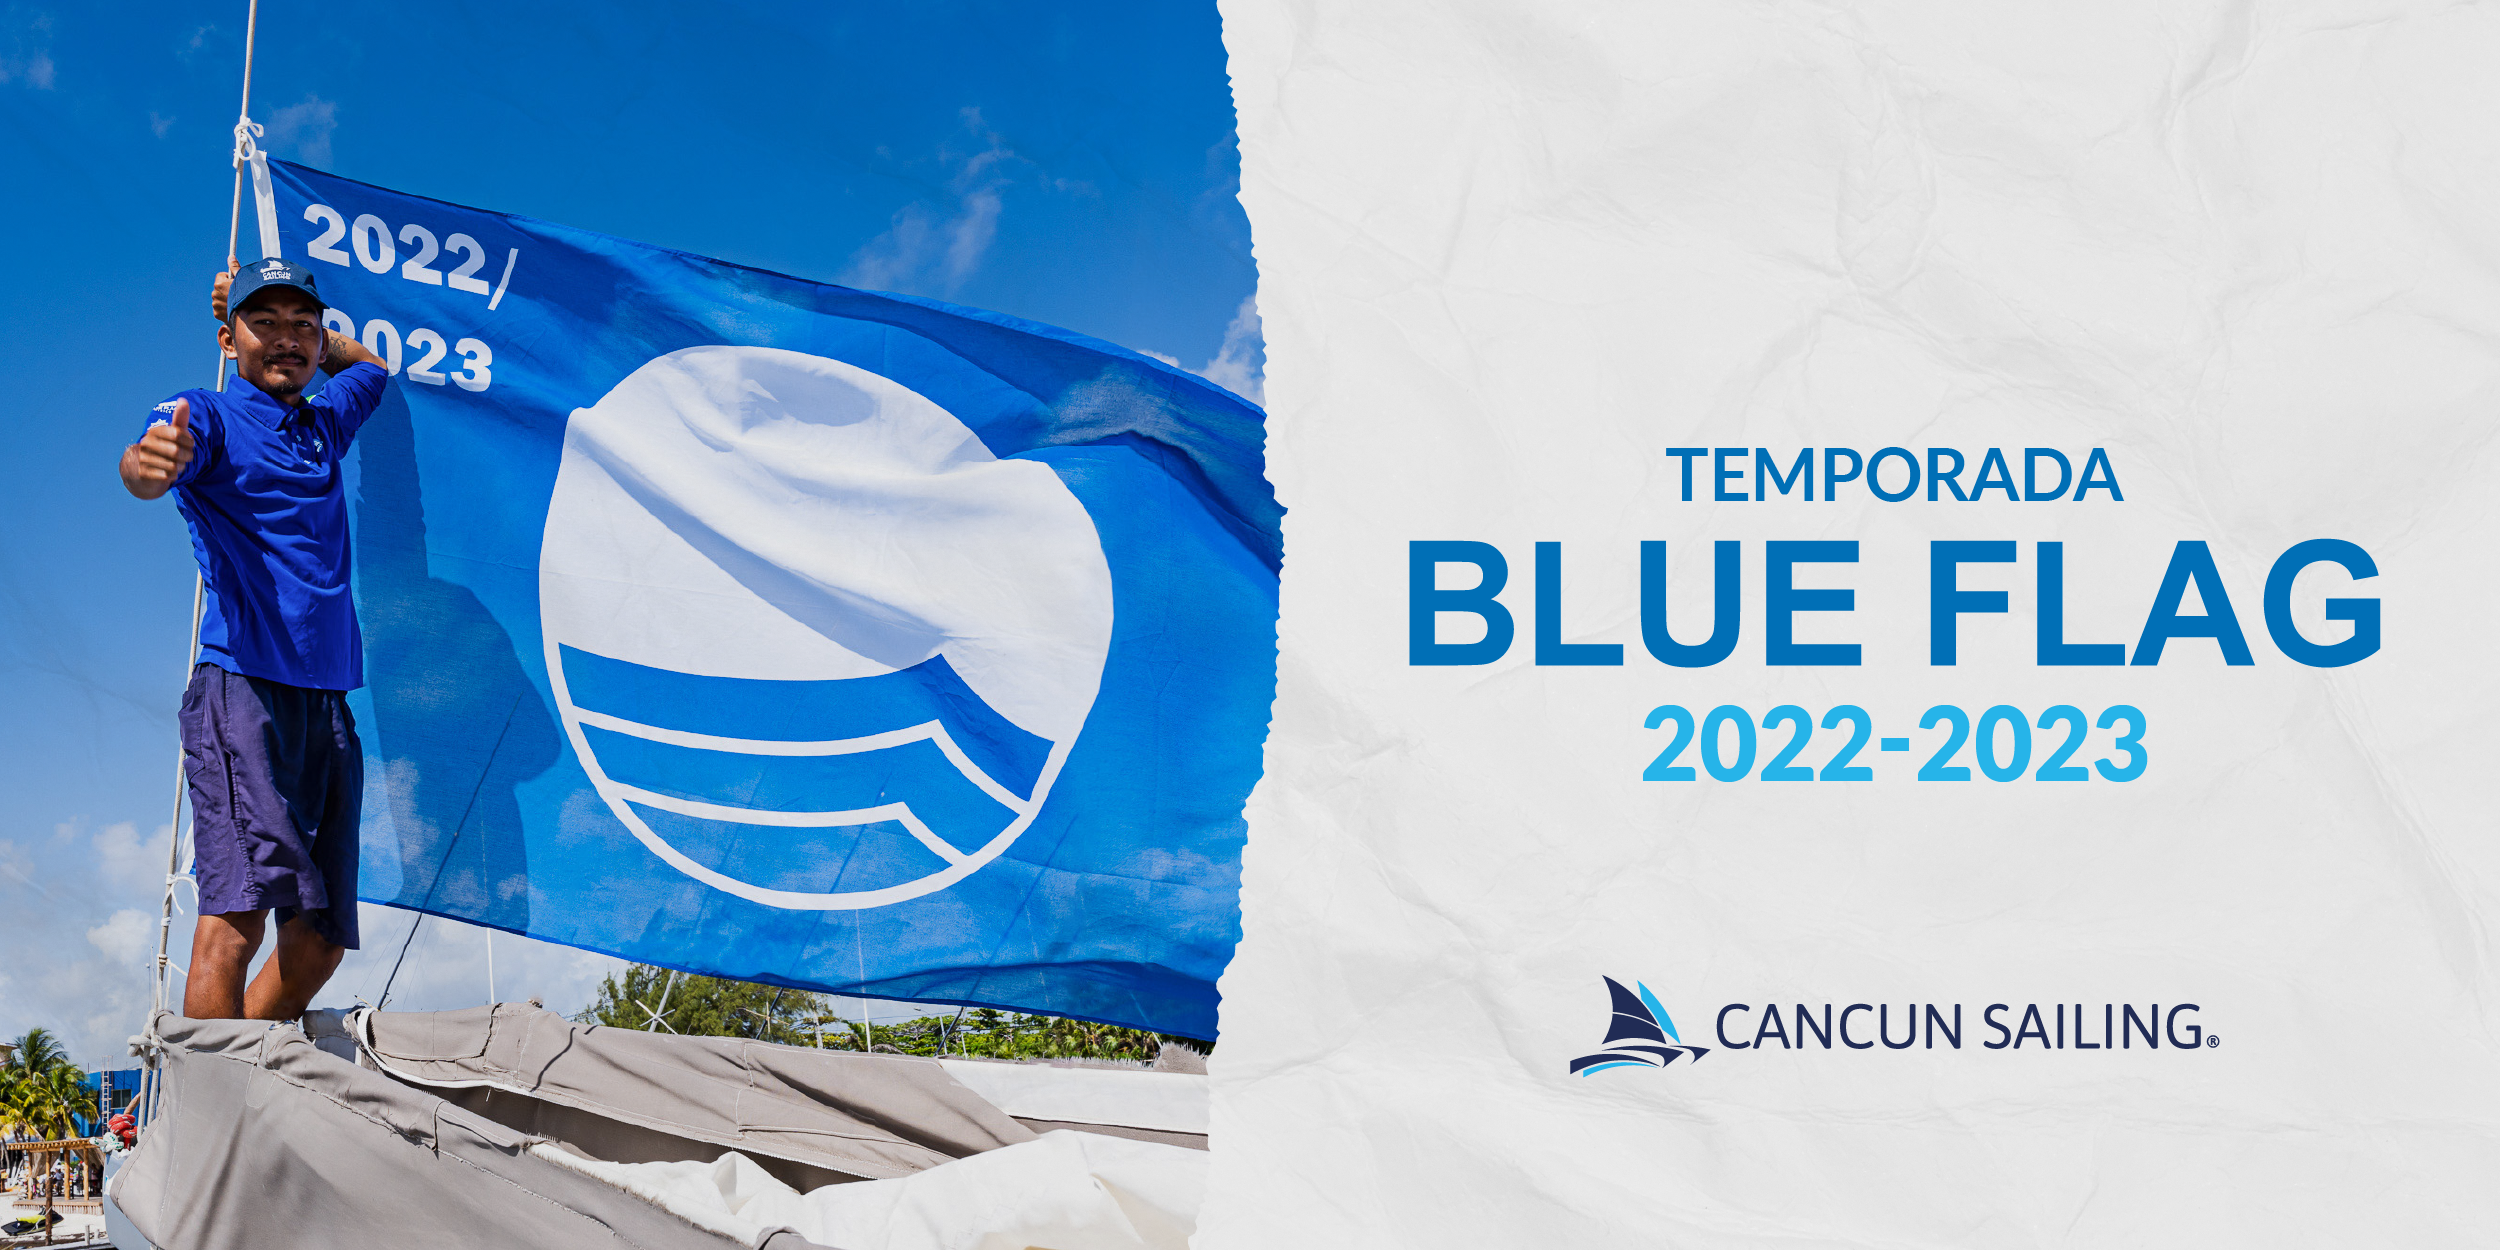 Blue flag cancun 2022-2023